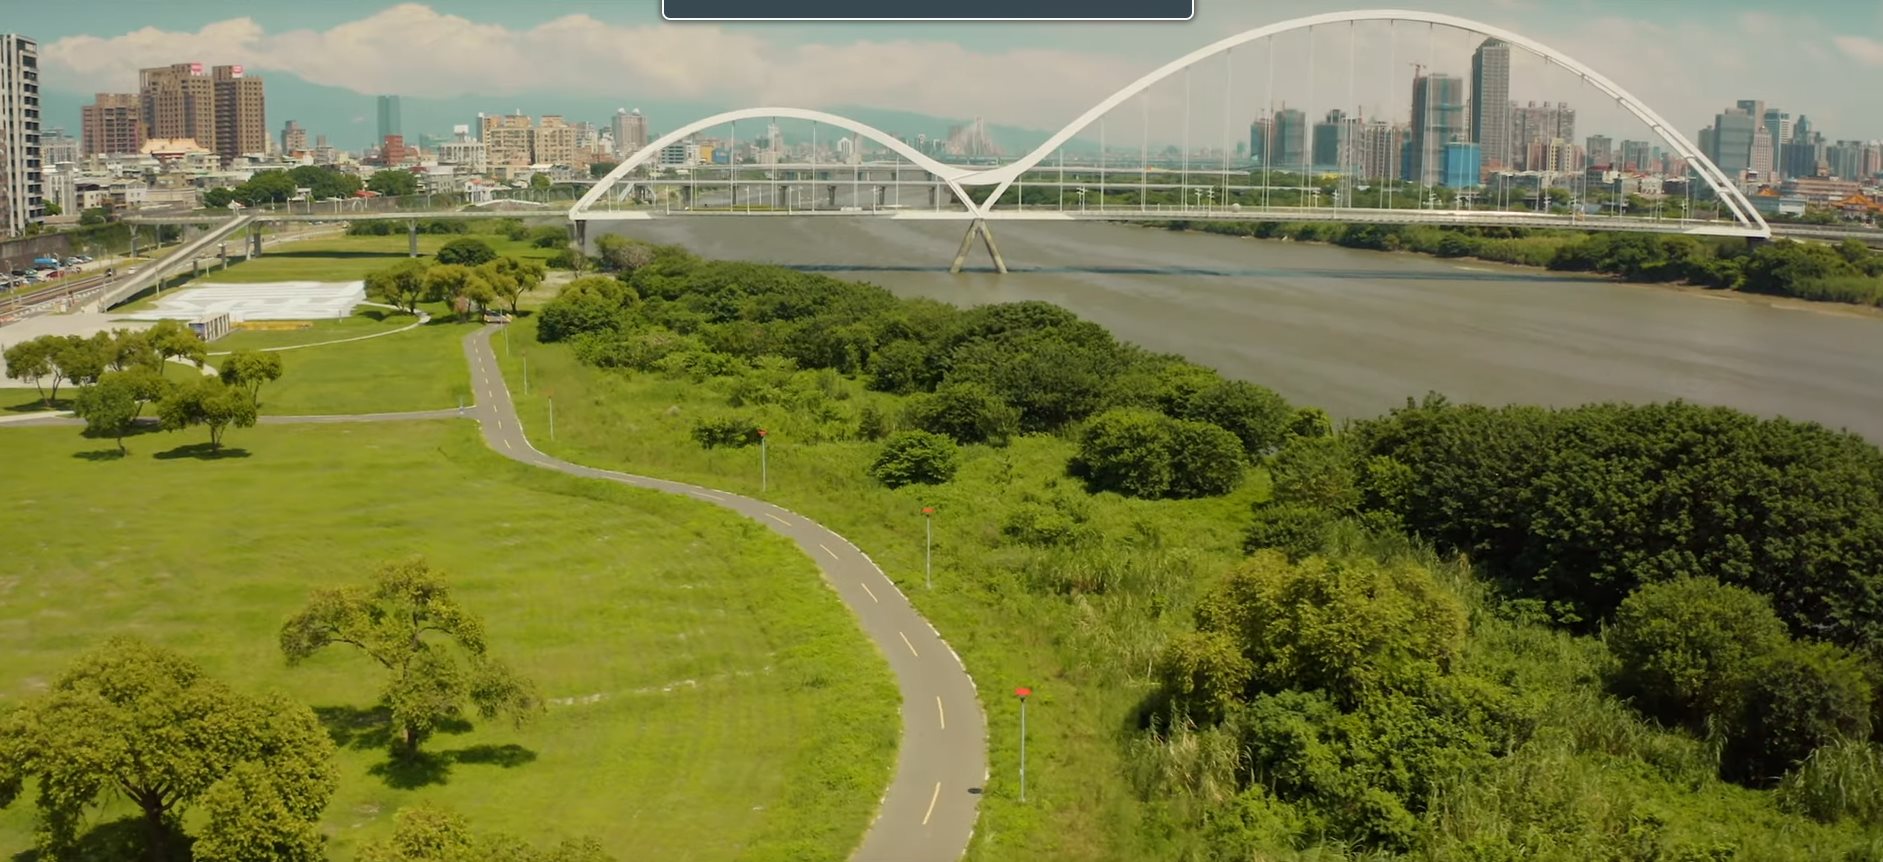 新月橋自行車道改善 更靠近自然美景